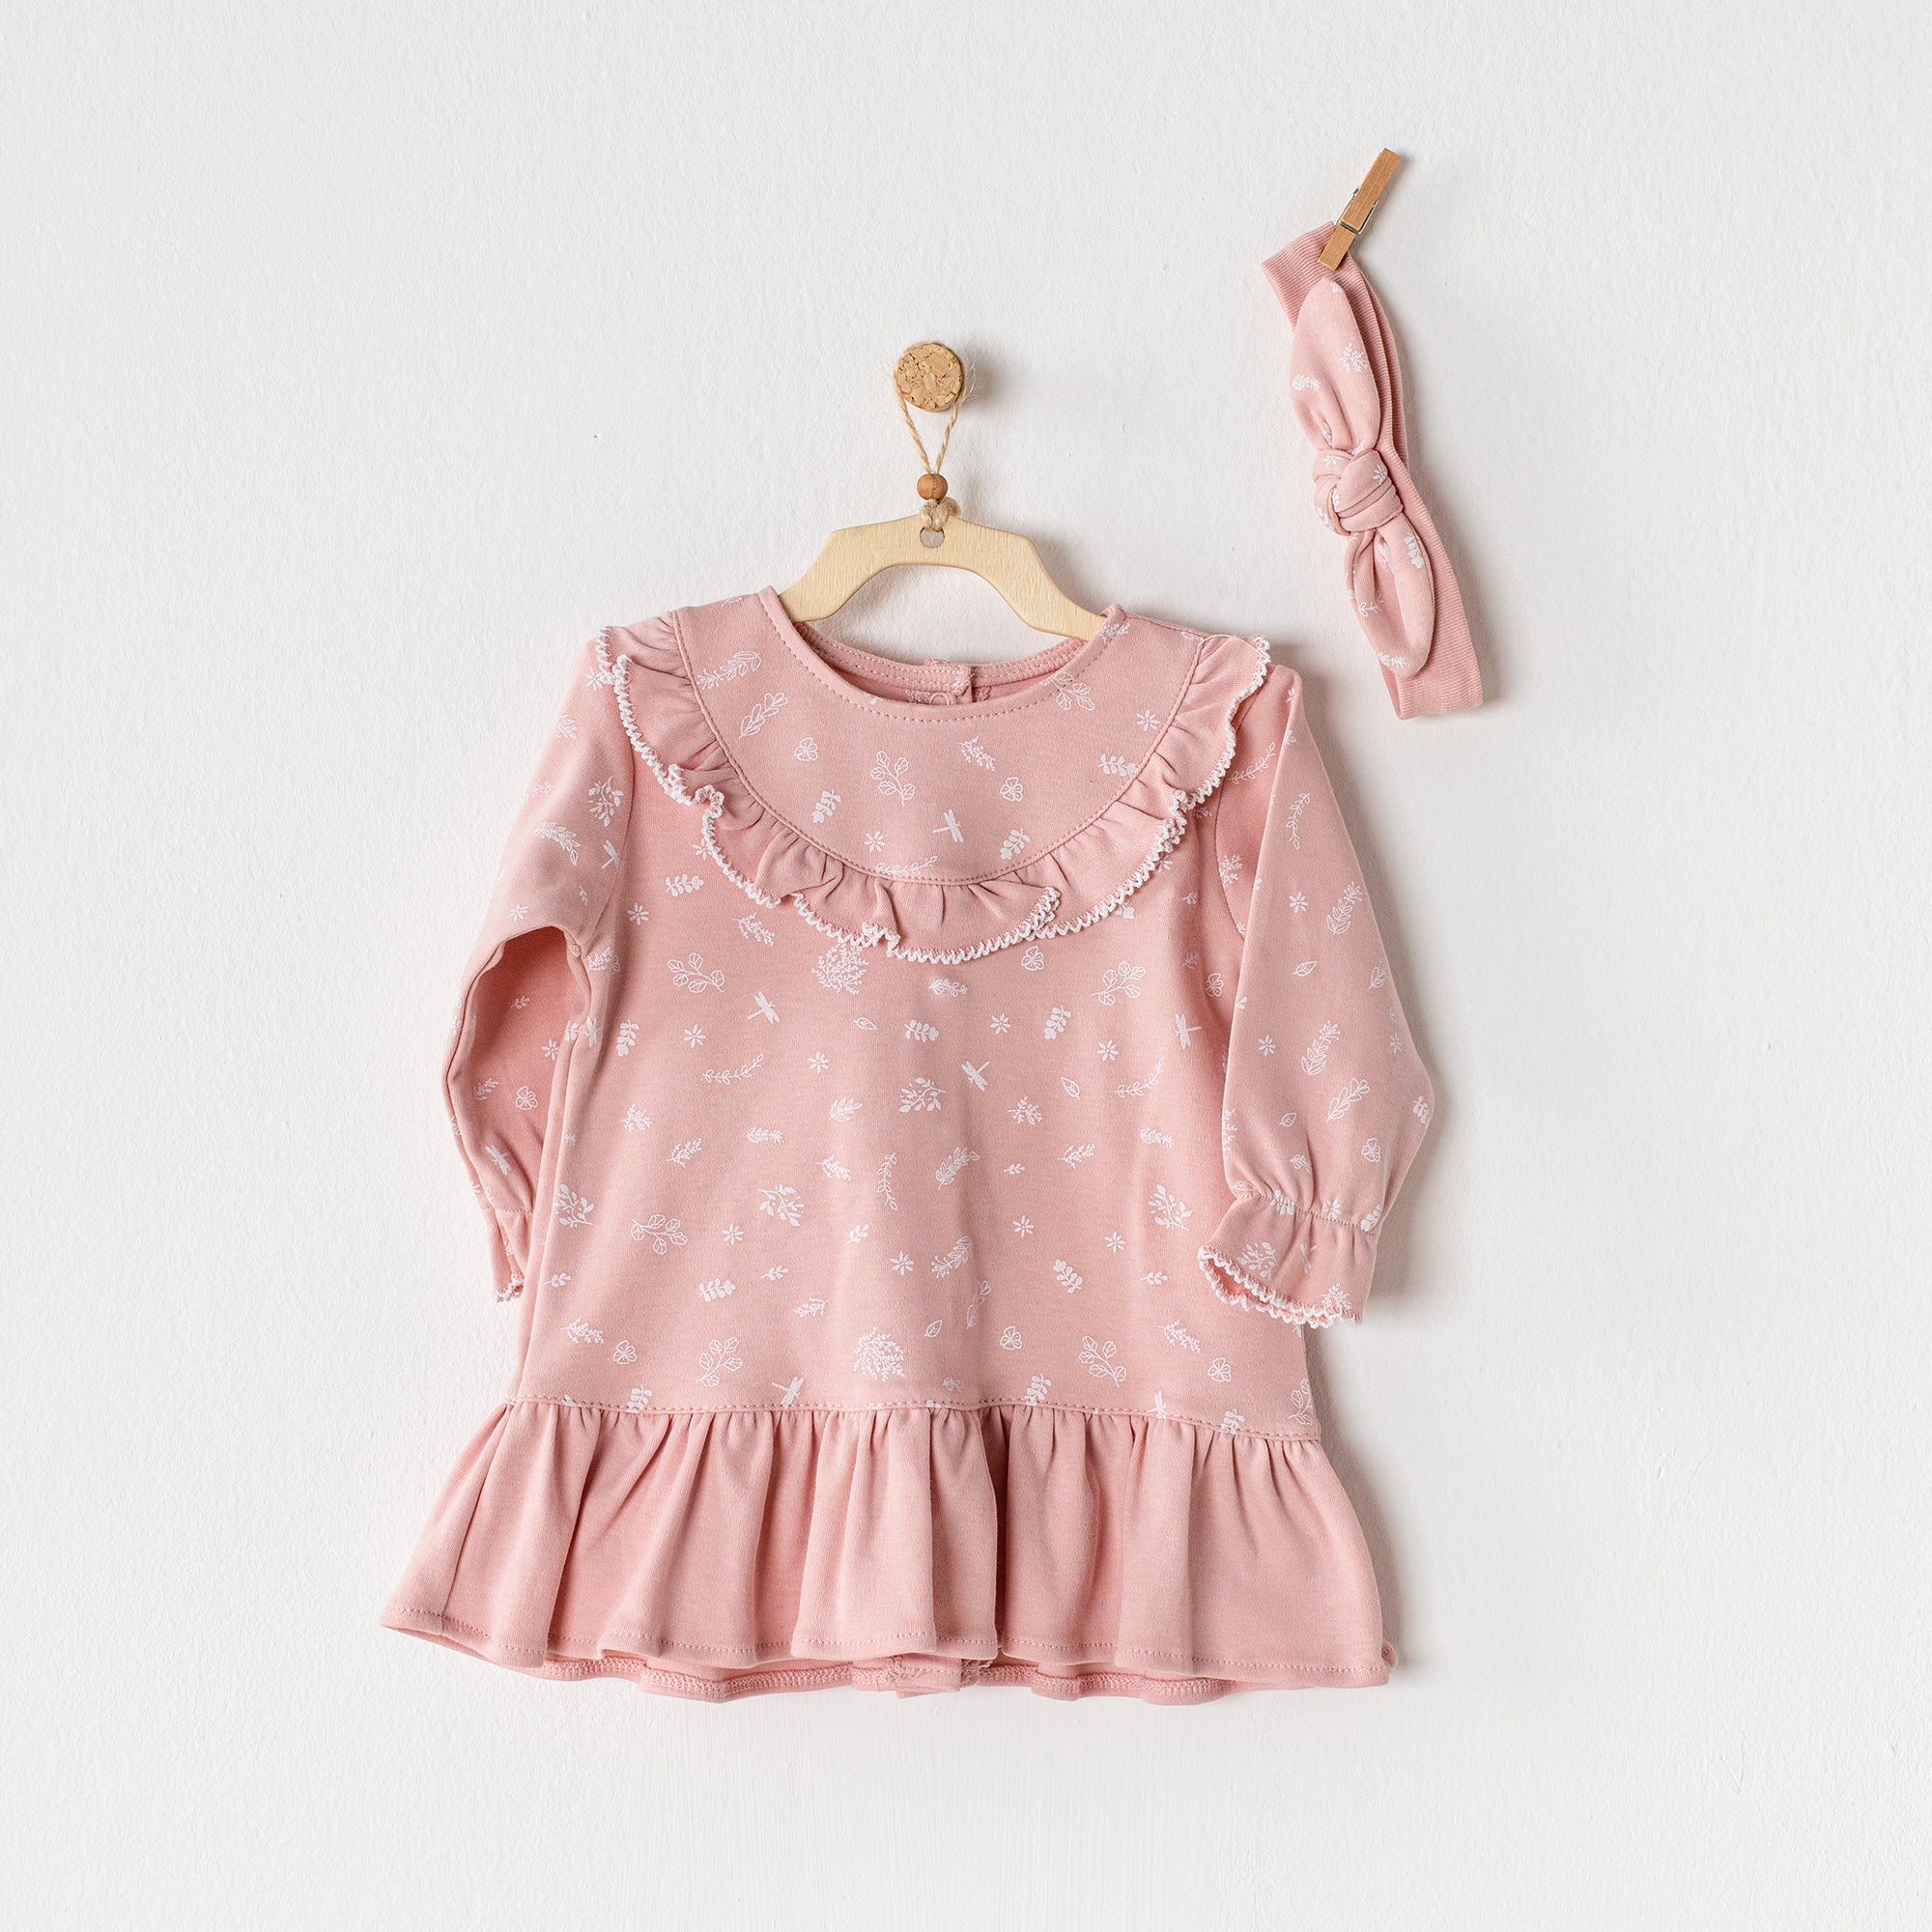 Organic Cotton Smoked Pinky Dress - Organic Cotton Smoked Pinky Dress - 1-3 Months - Andywawa - Melymod